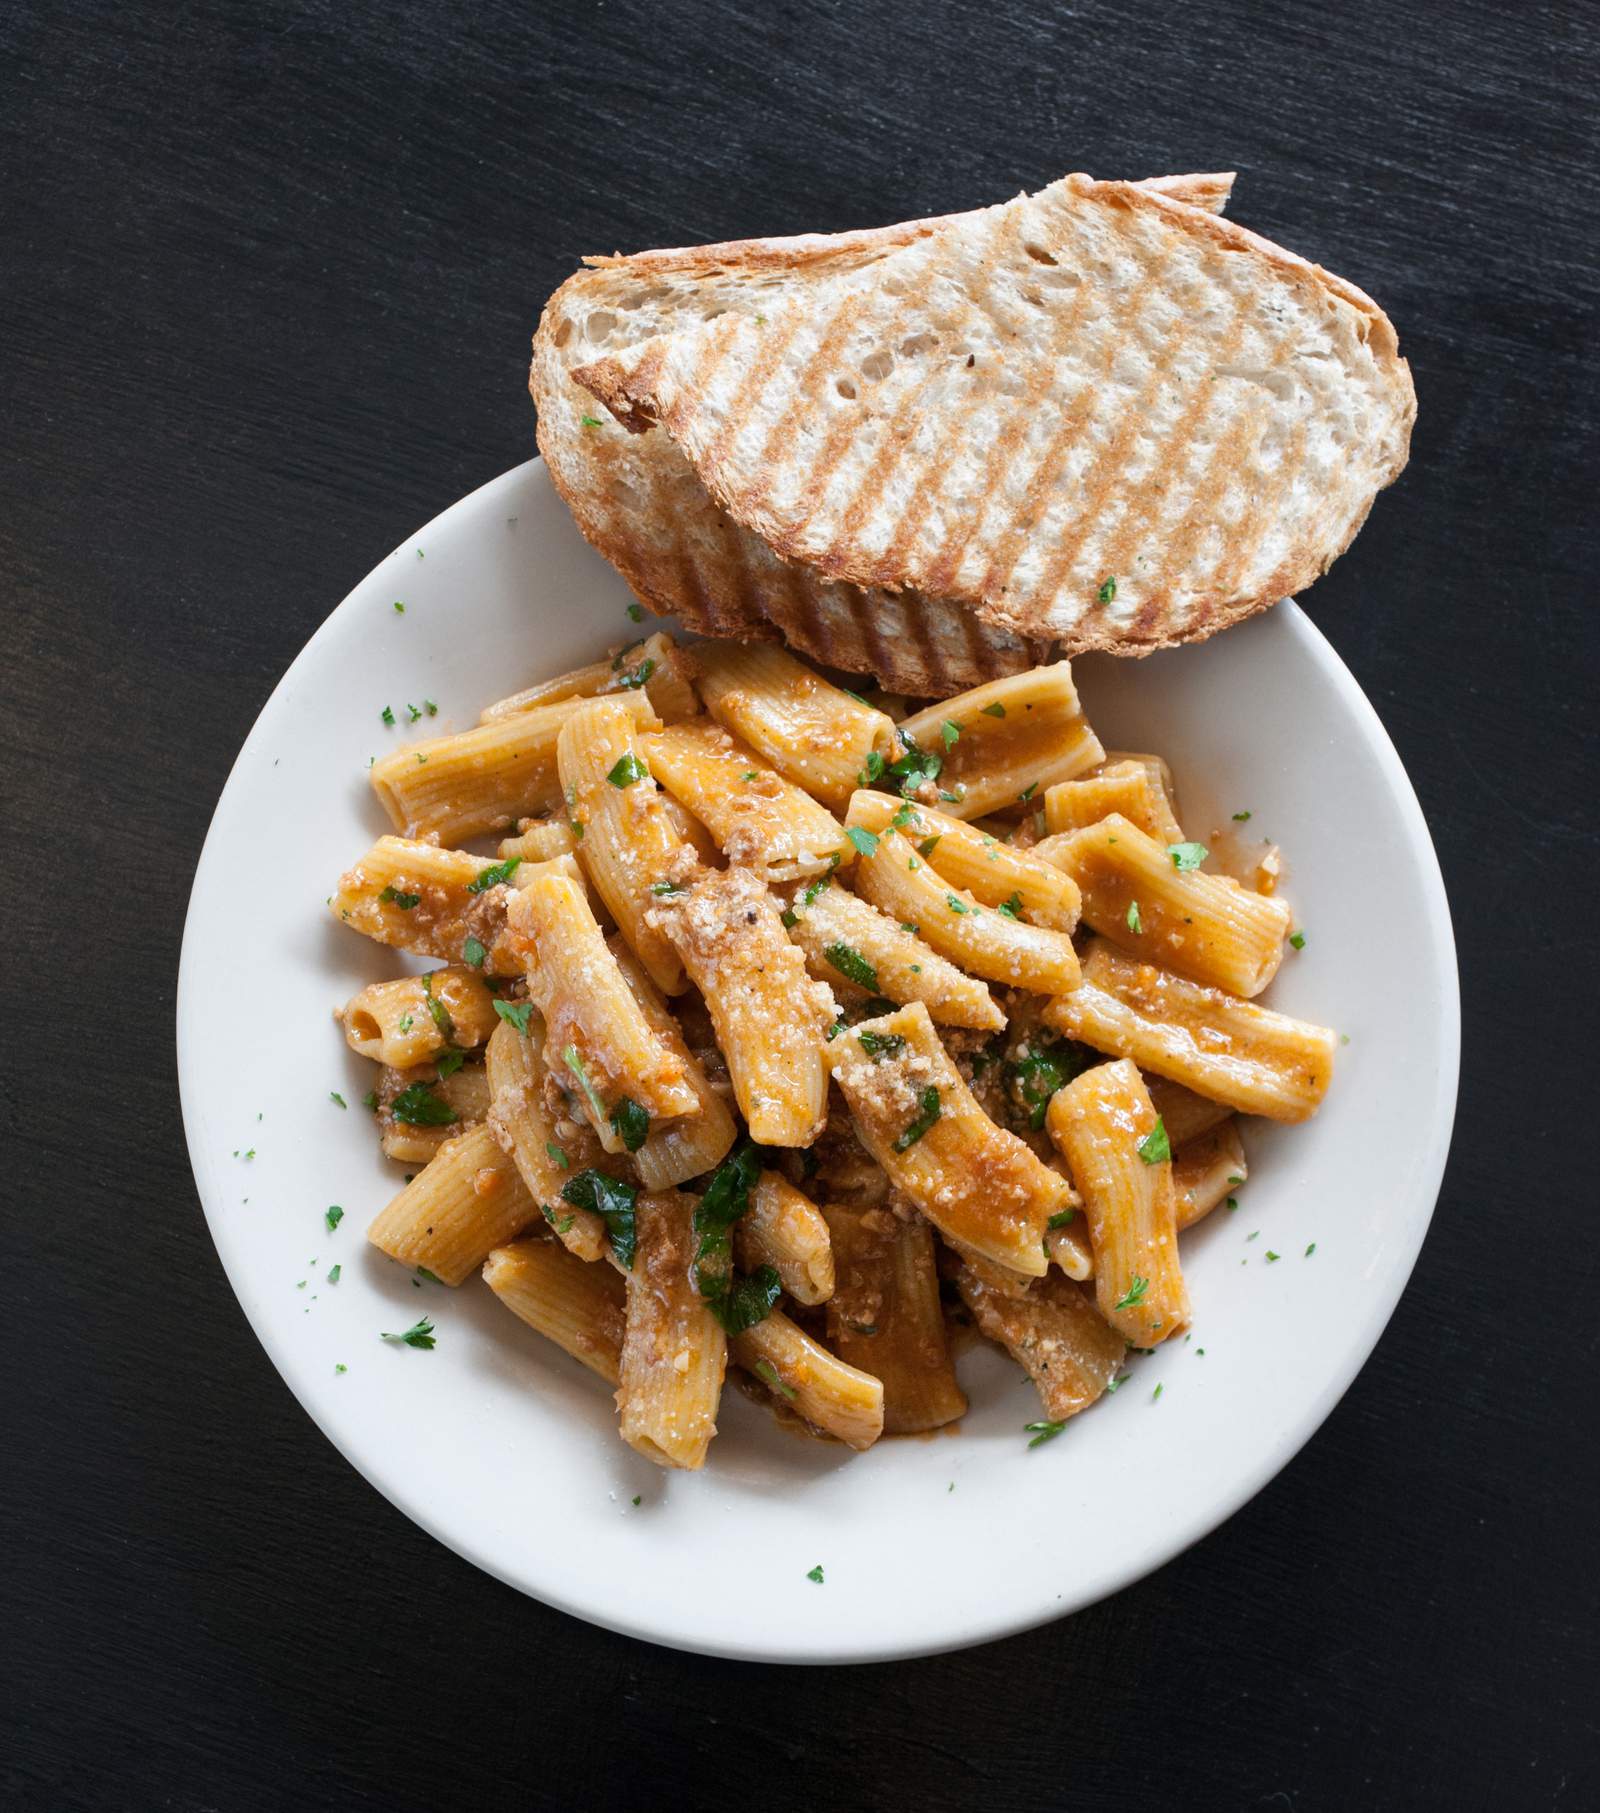 Taste of Houston: Paulie’s Restaurant brings family-style Italian cooking to the Montrose restaurant scene